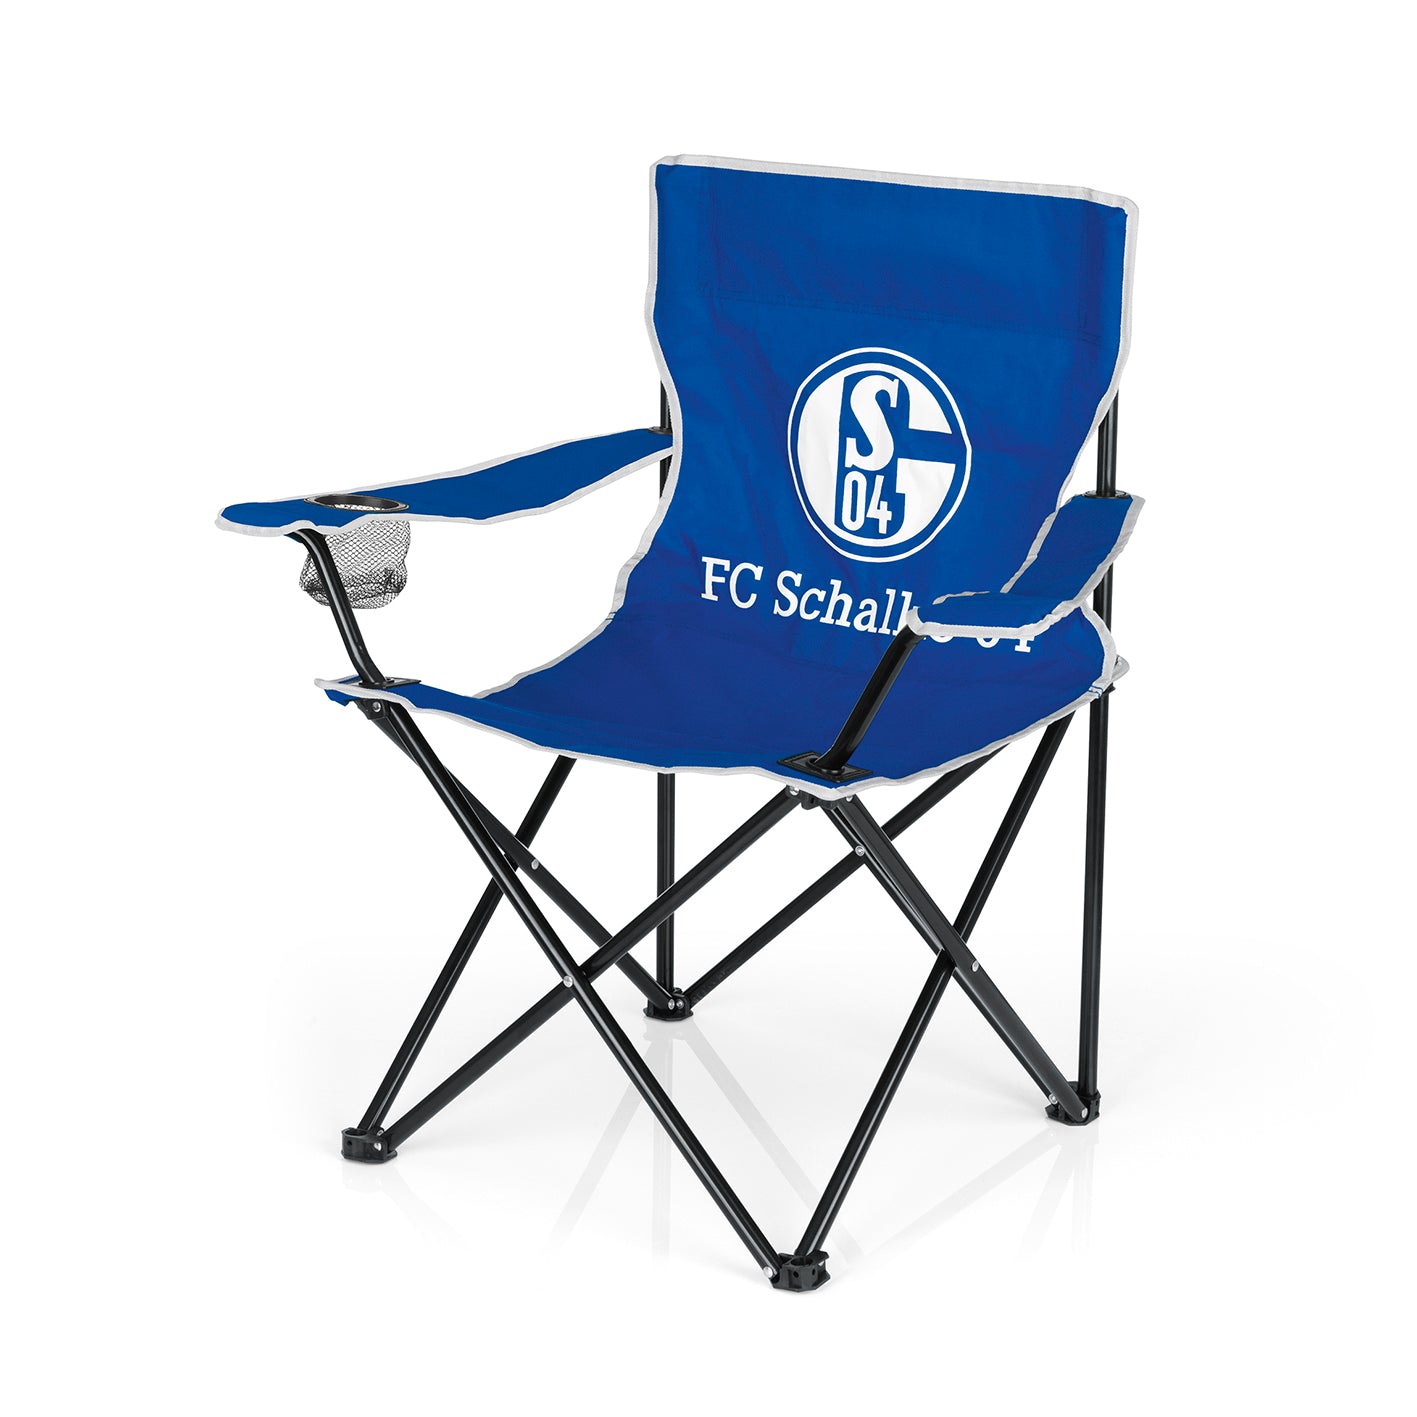 Campingstuhl faltbar mit Logo - 80x50 cm - weiß/blau